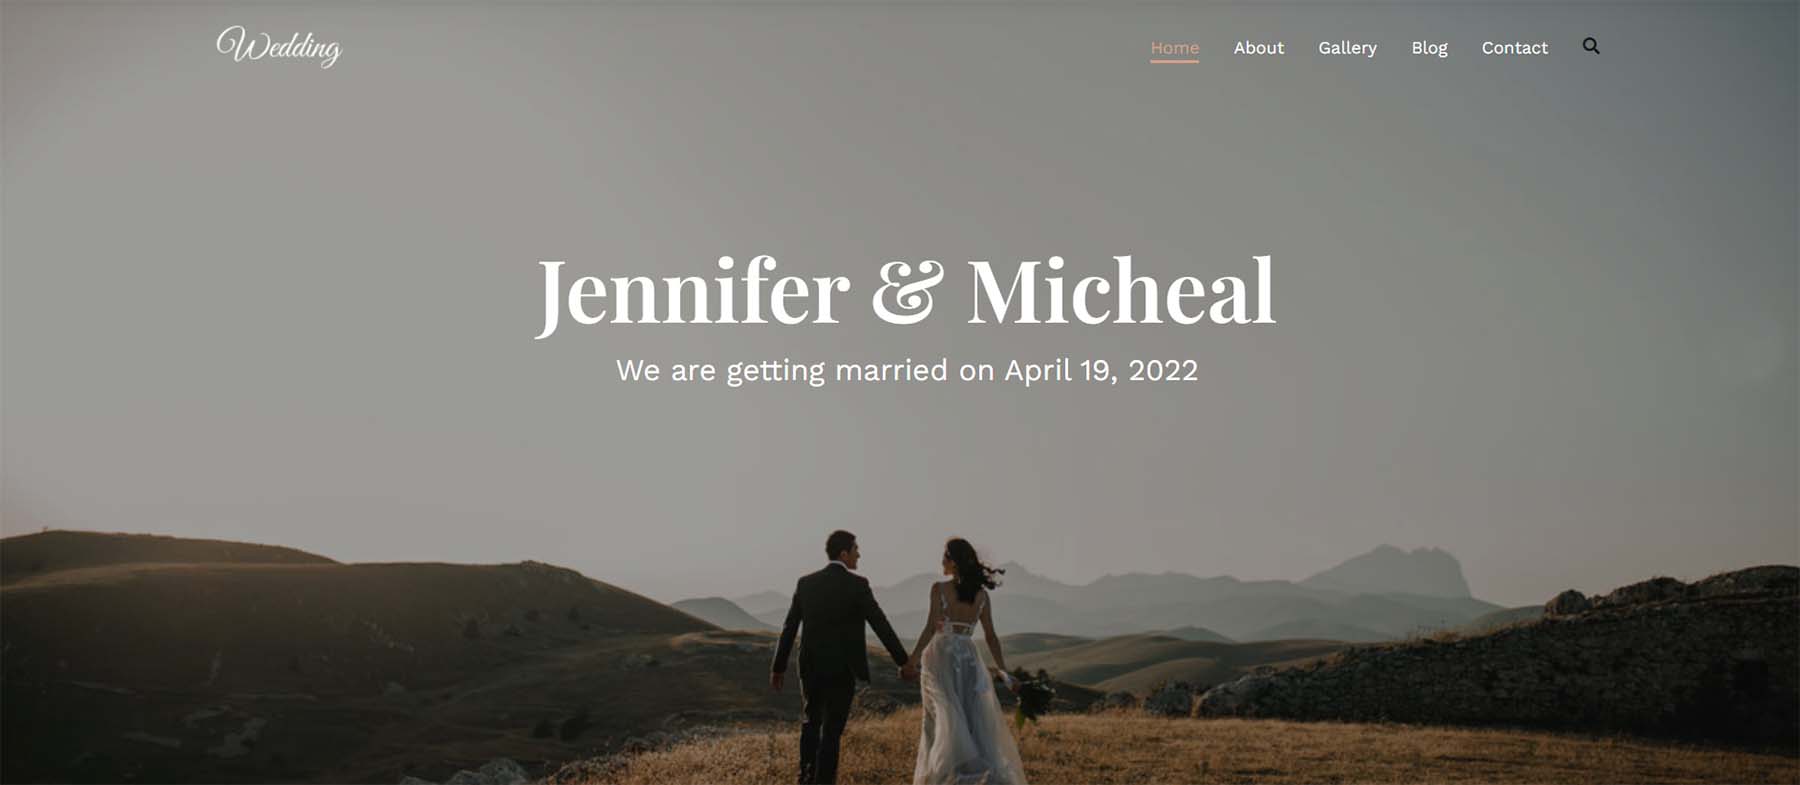 Zakra, eines der besten WordPress-Hochzeitsthemen für Hochzeitswebsites